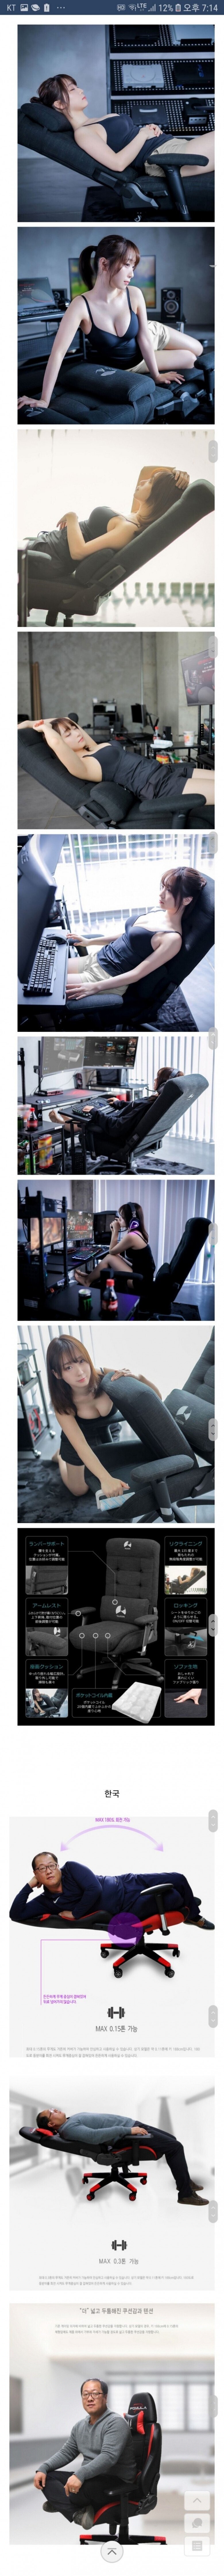 (ㅎㅂ주의) 게이밍 의자 광고 한국 vs 일본.jpg